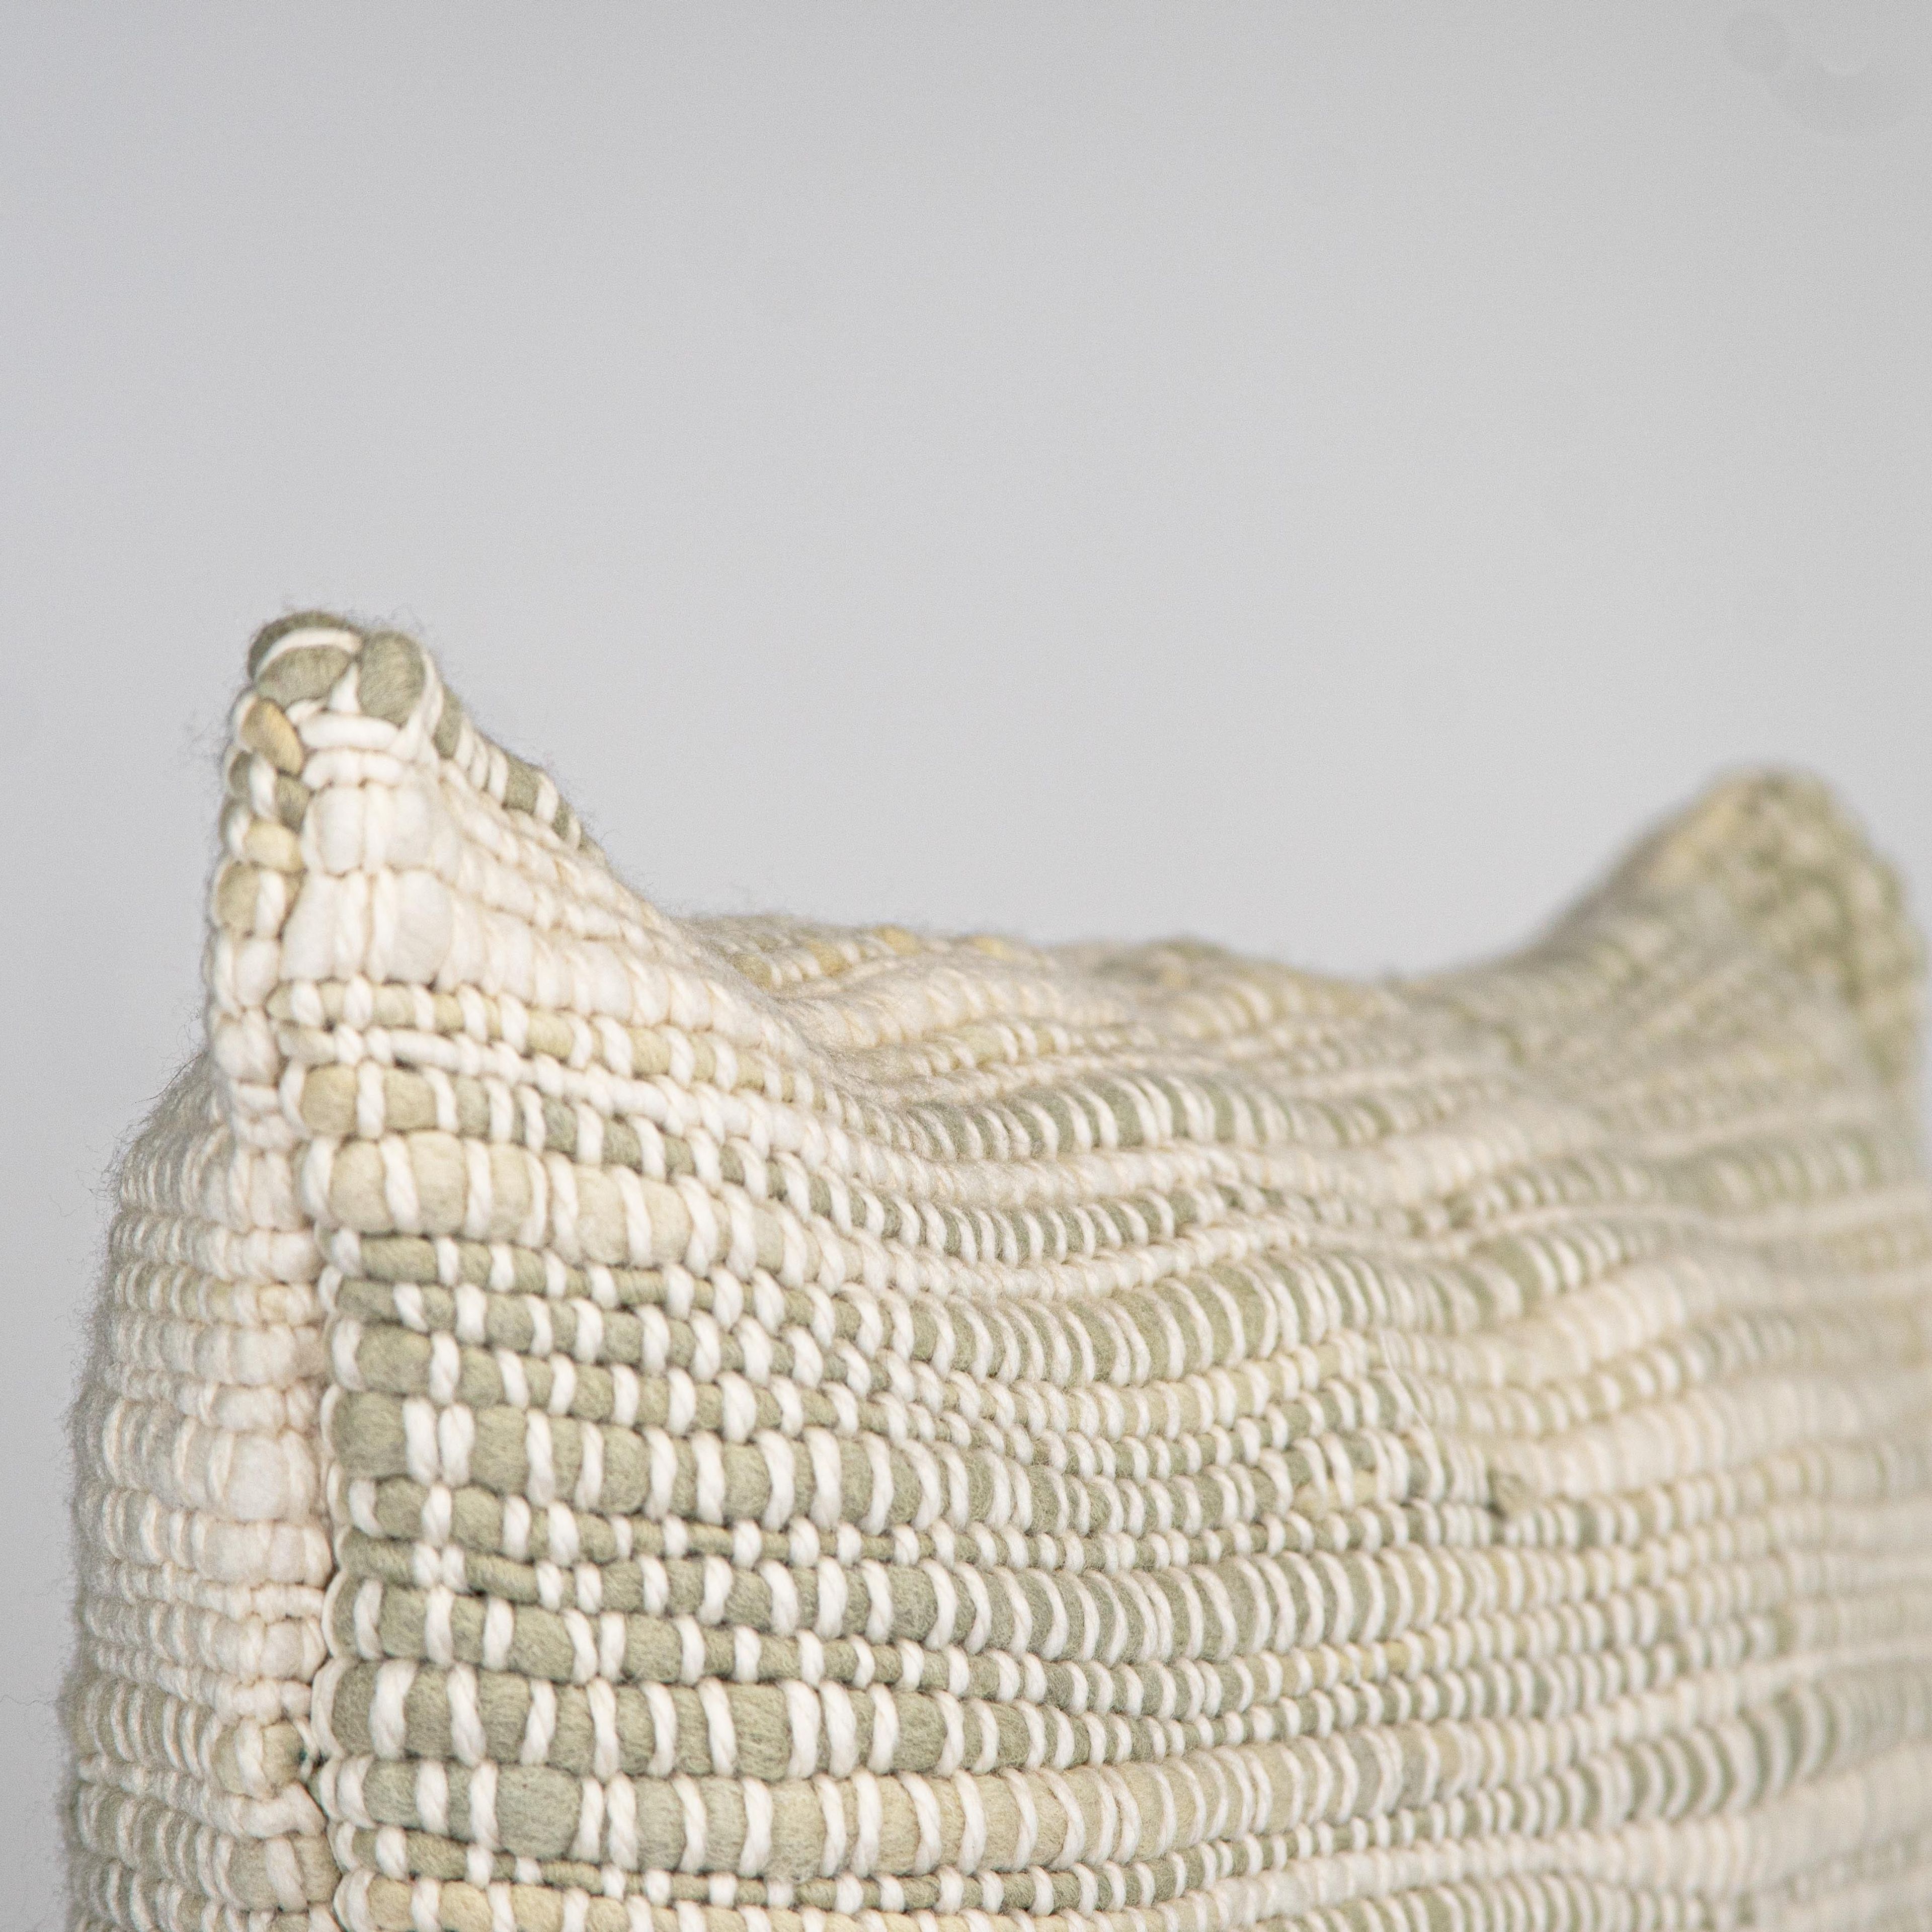 Lumbar Pillow Cover in Sage Green Textured Pradera 24x12